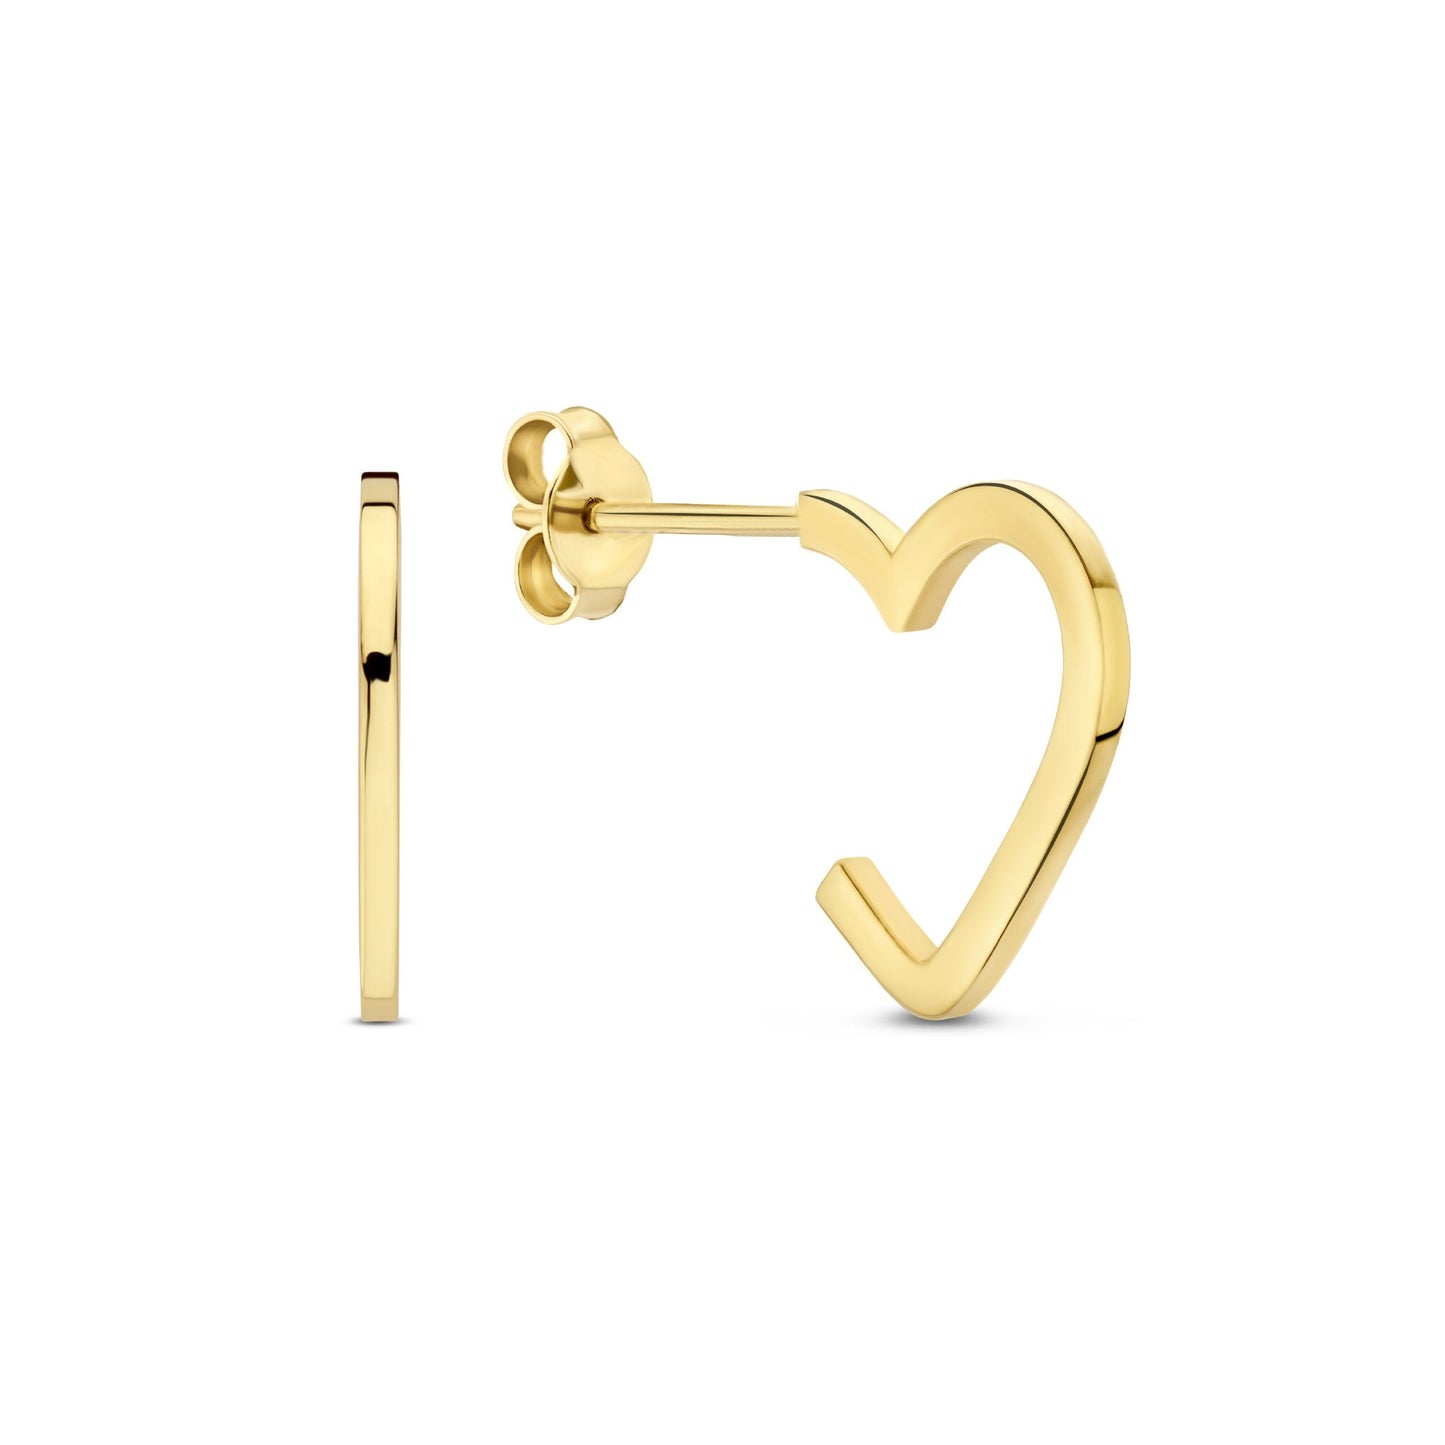 Della Spiga Giulia 9 karat gold ear studs with heart